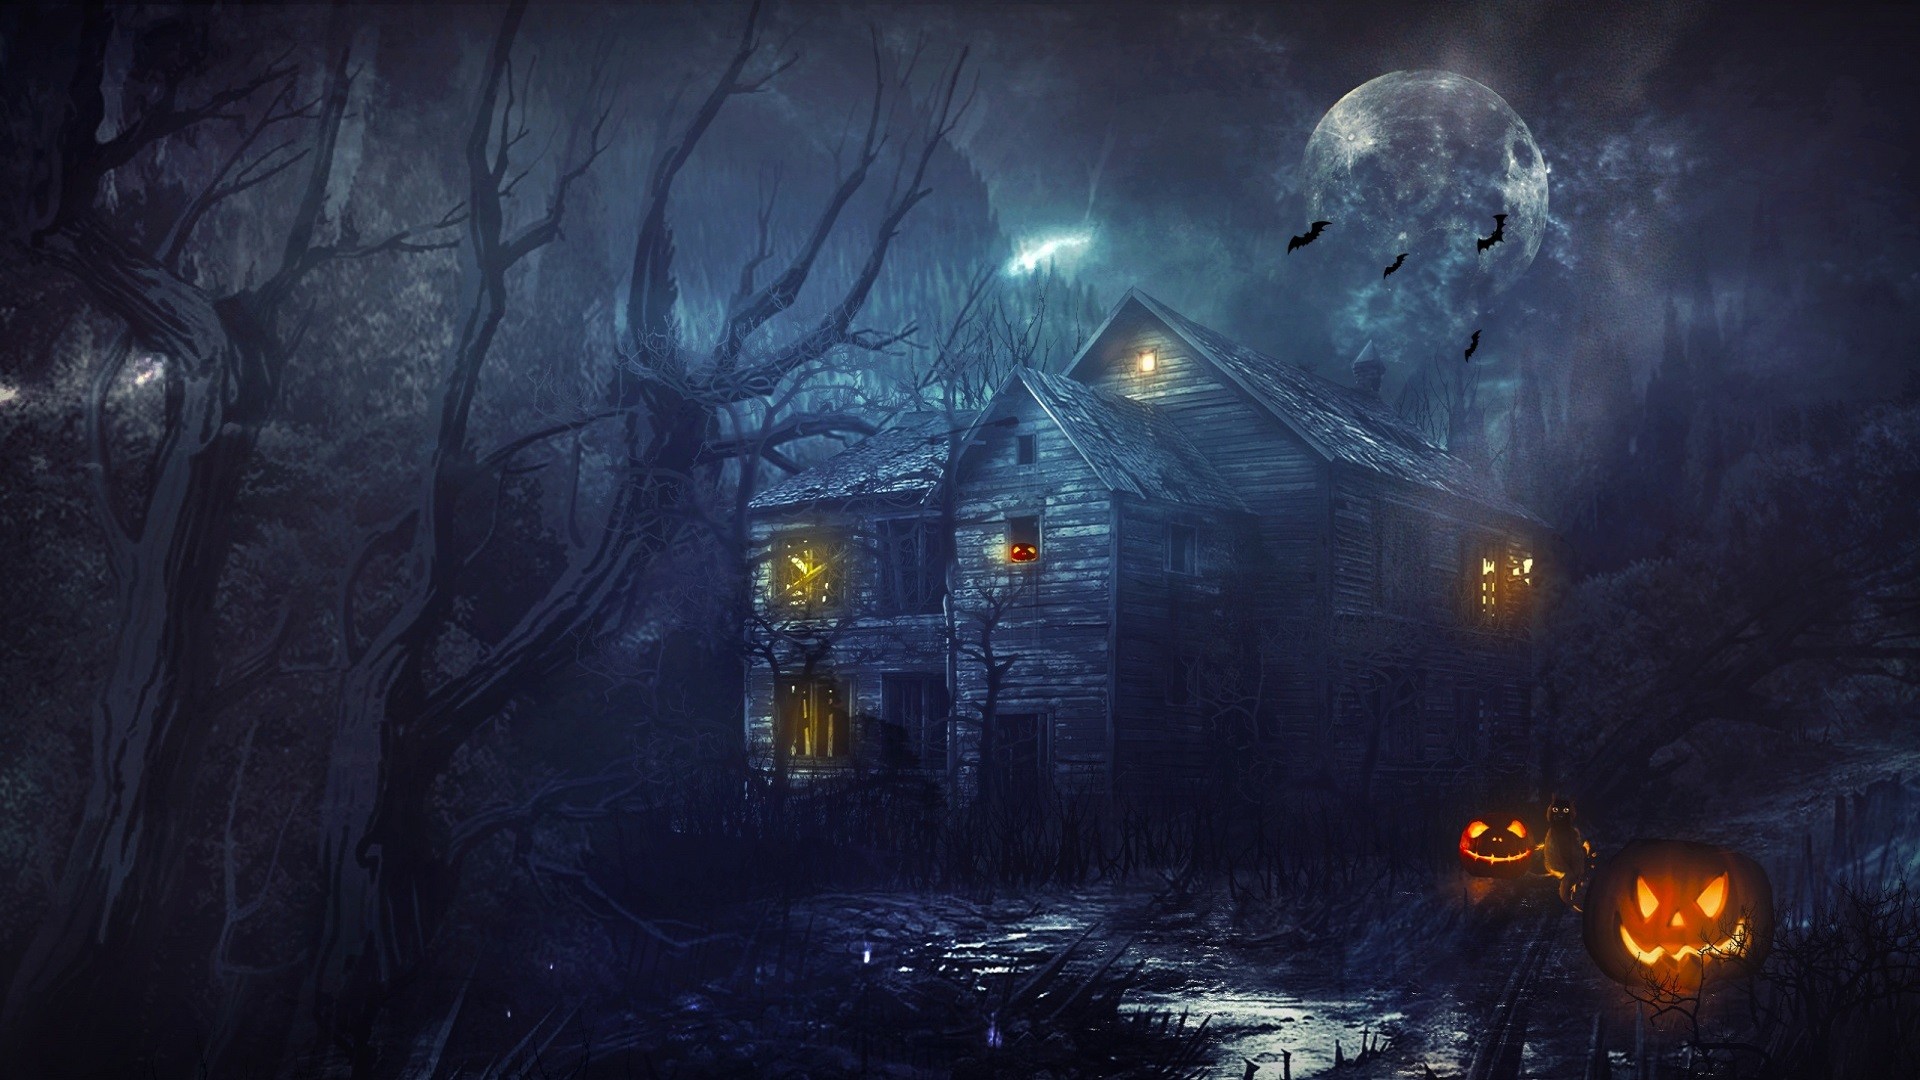 Halloween Desktop Wallpaper